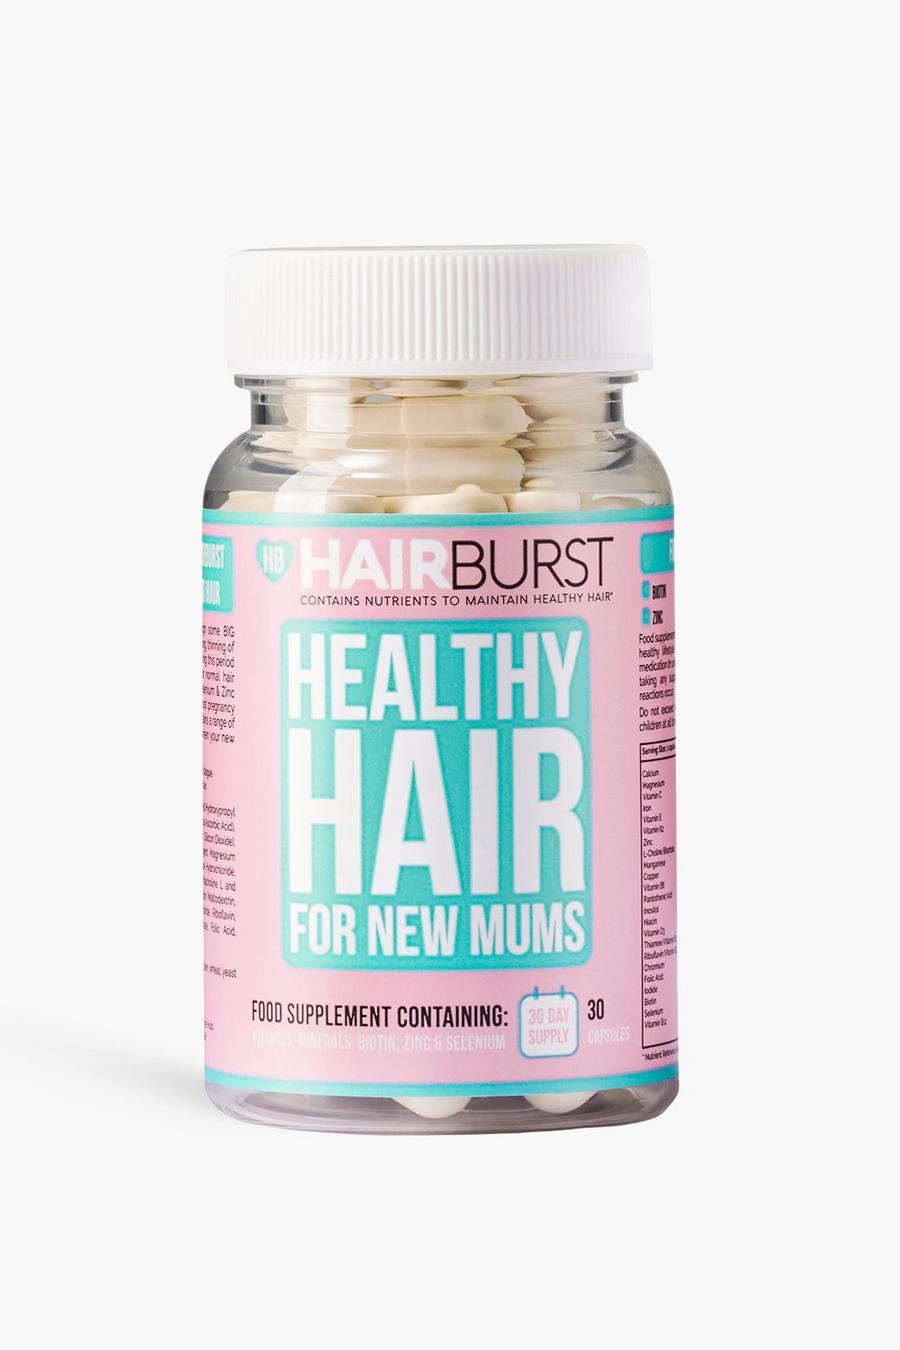 Hairburst - Vitamines pour les cheveux - Spécial femme enceinte, Clear